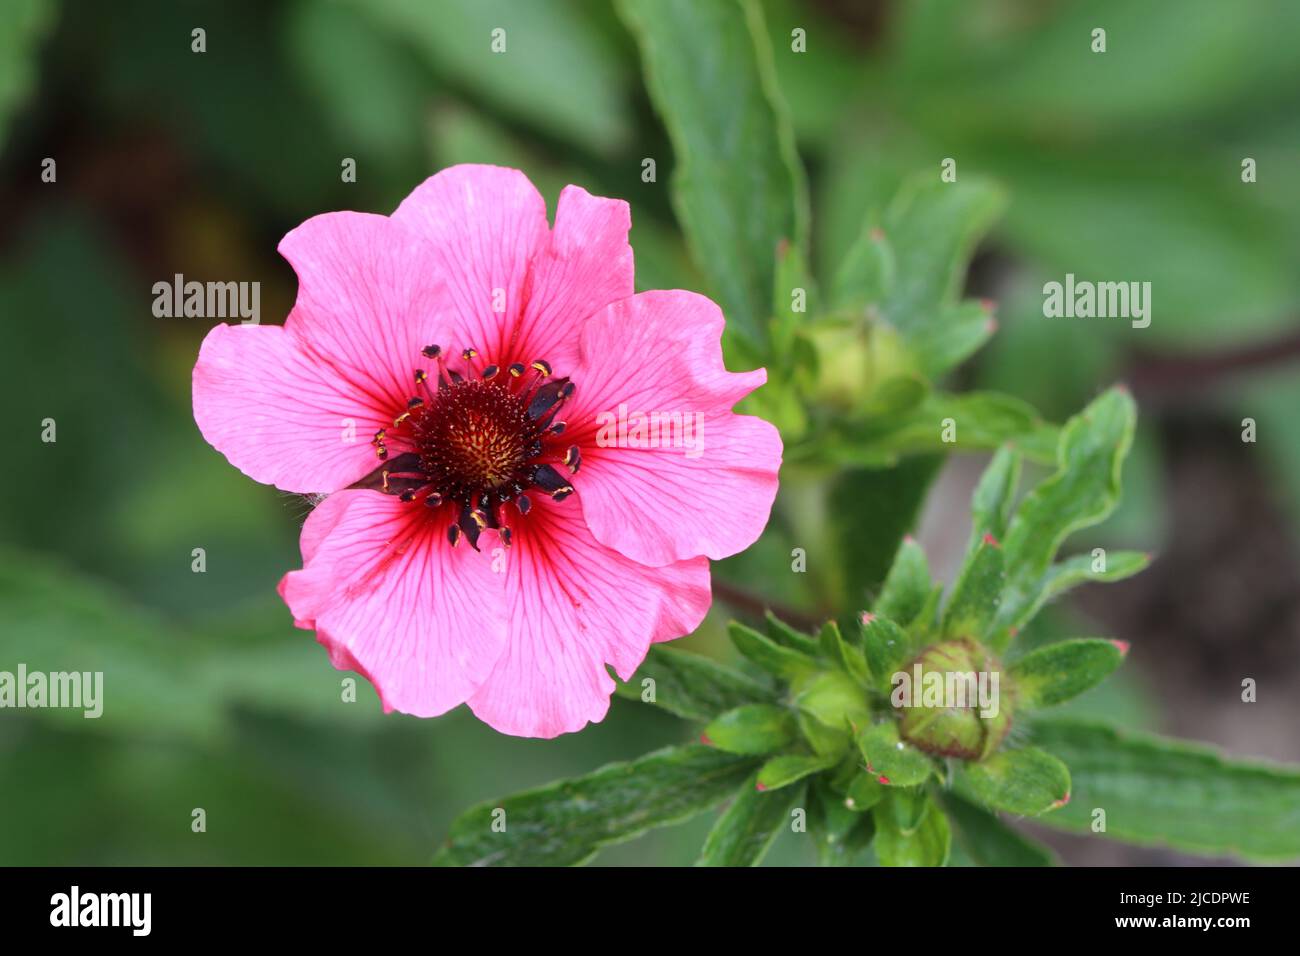 gros plan d'un beau rose fleuri potentilla nepalensis sur un fond vert flou Banque D'Images